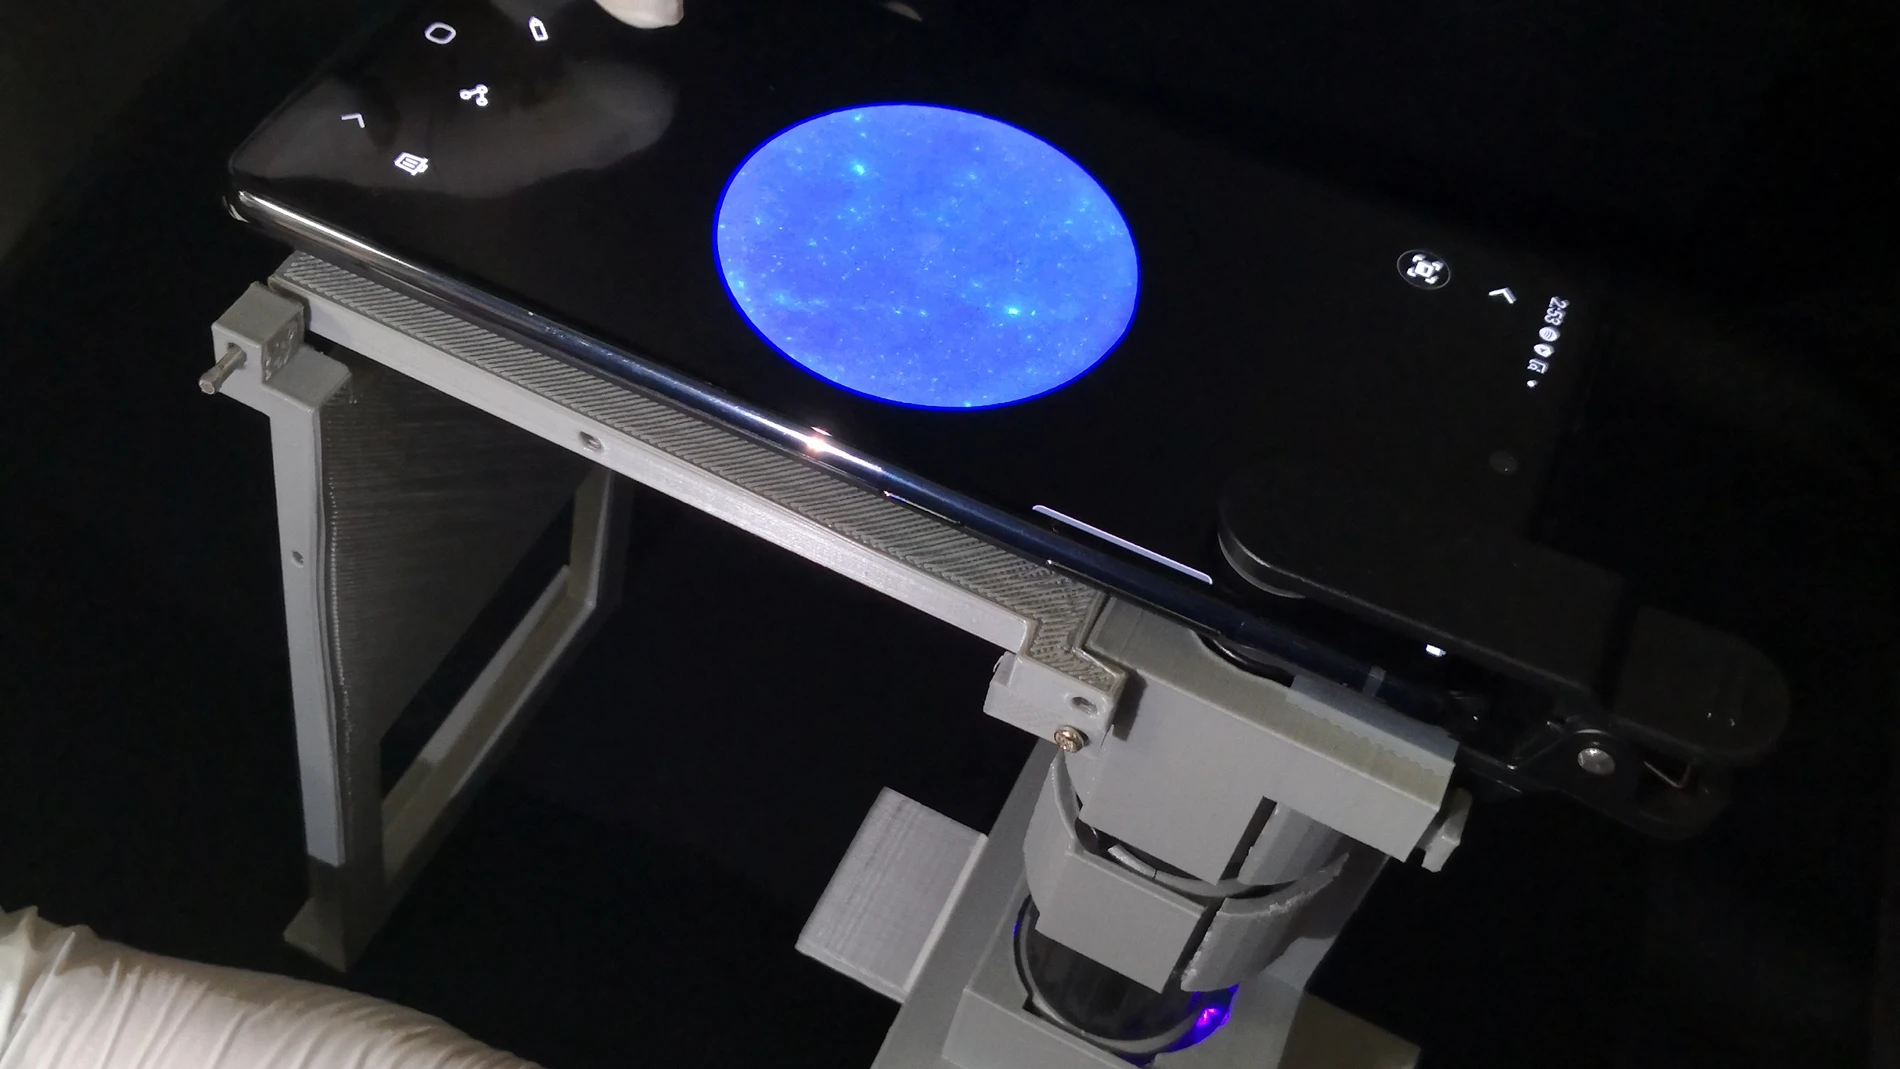 Investigadores de UArizona obtienen imágenes de una muestra utilizando un microscopio de teléfono inteligente.